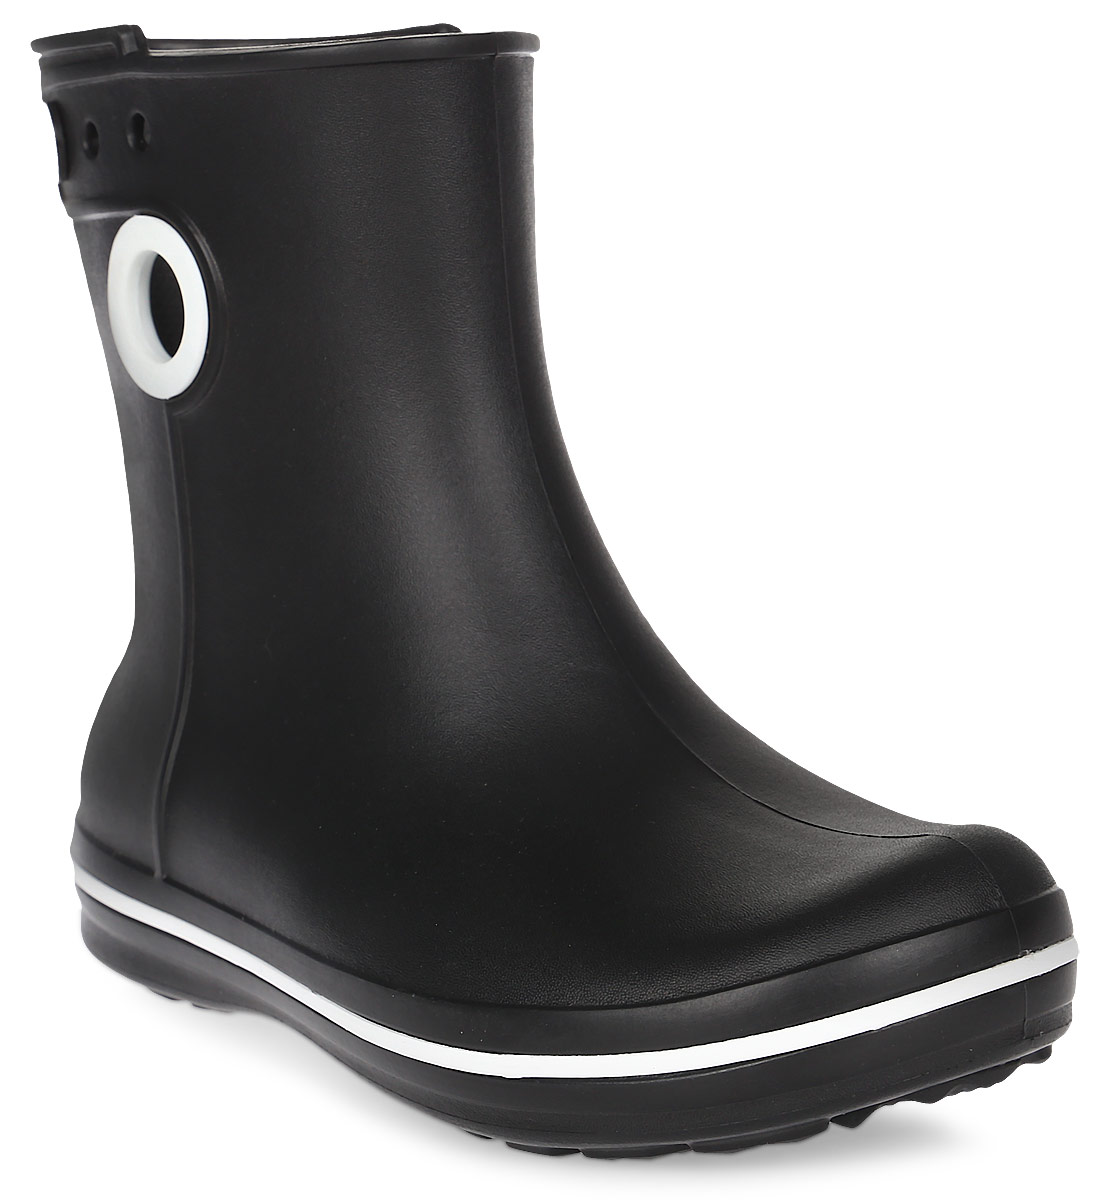 Полусапоги резиновые женские Crocs Jaunt Shorty Boot, цвет: черный. 15769-001. Размер 5 (35)